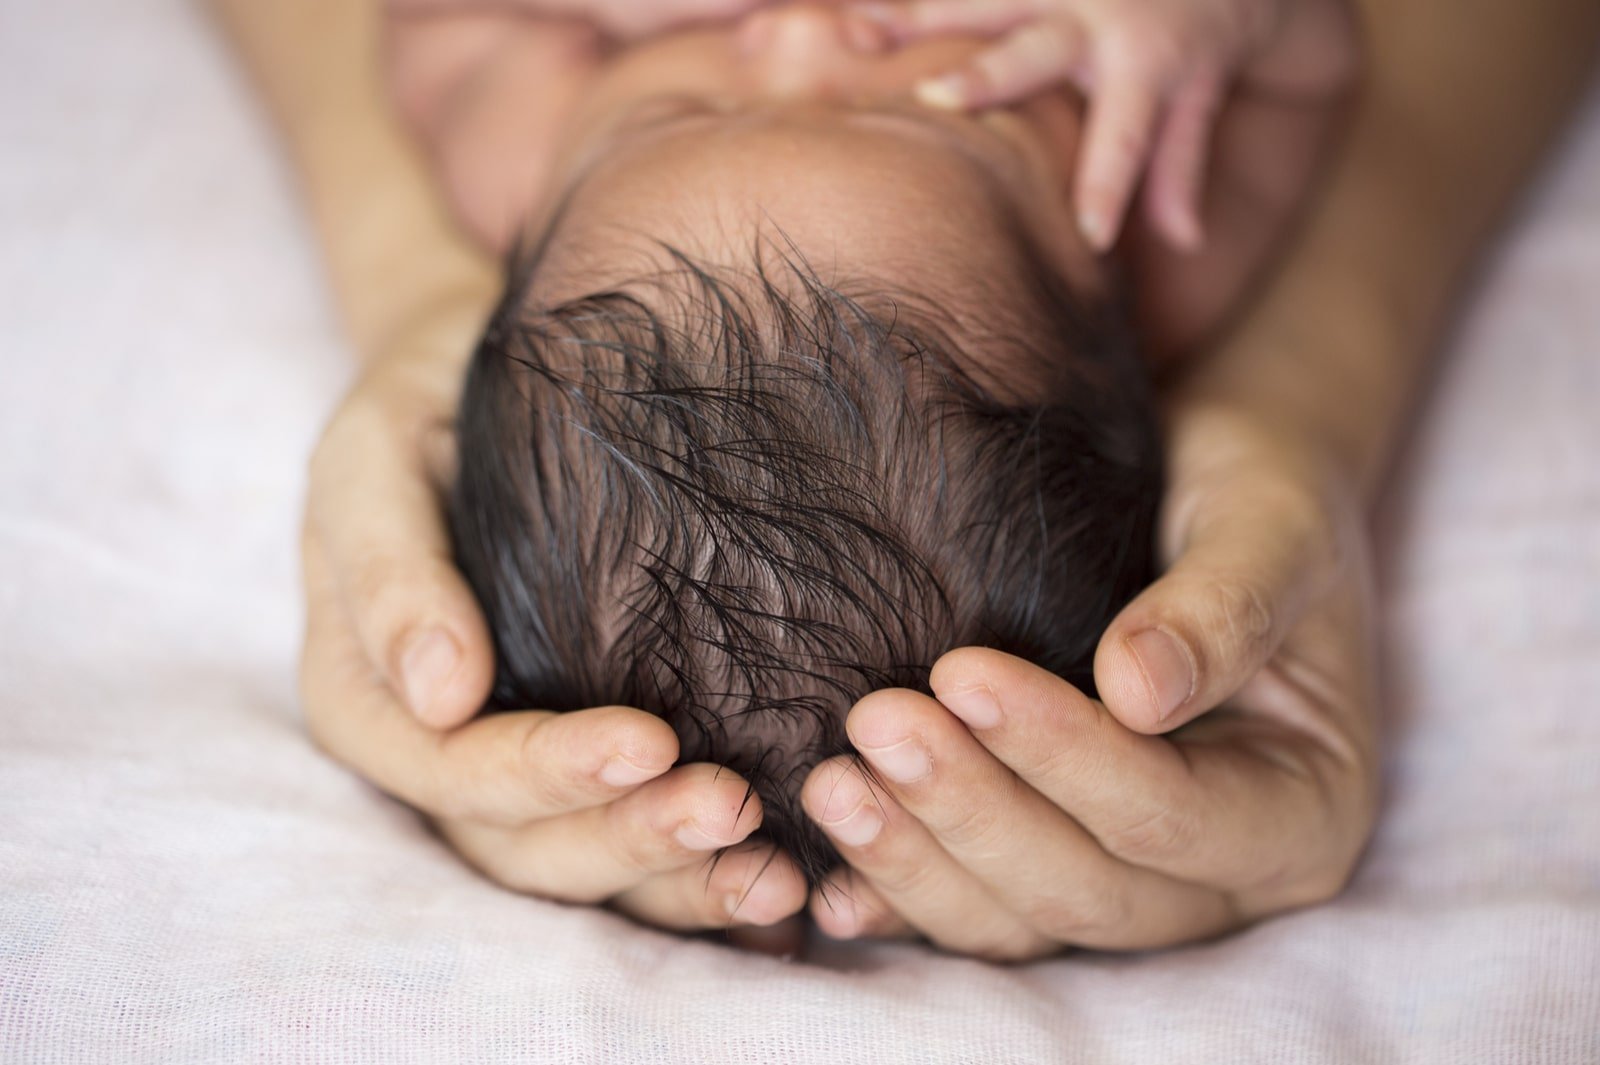 Manfaat Penting Minyak Rambut untuk Bayi